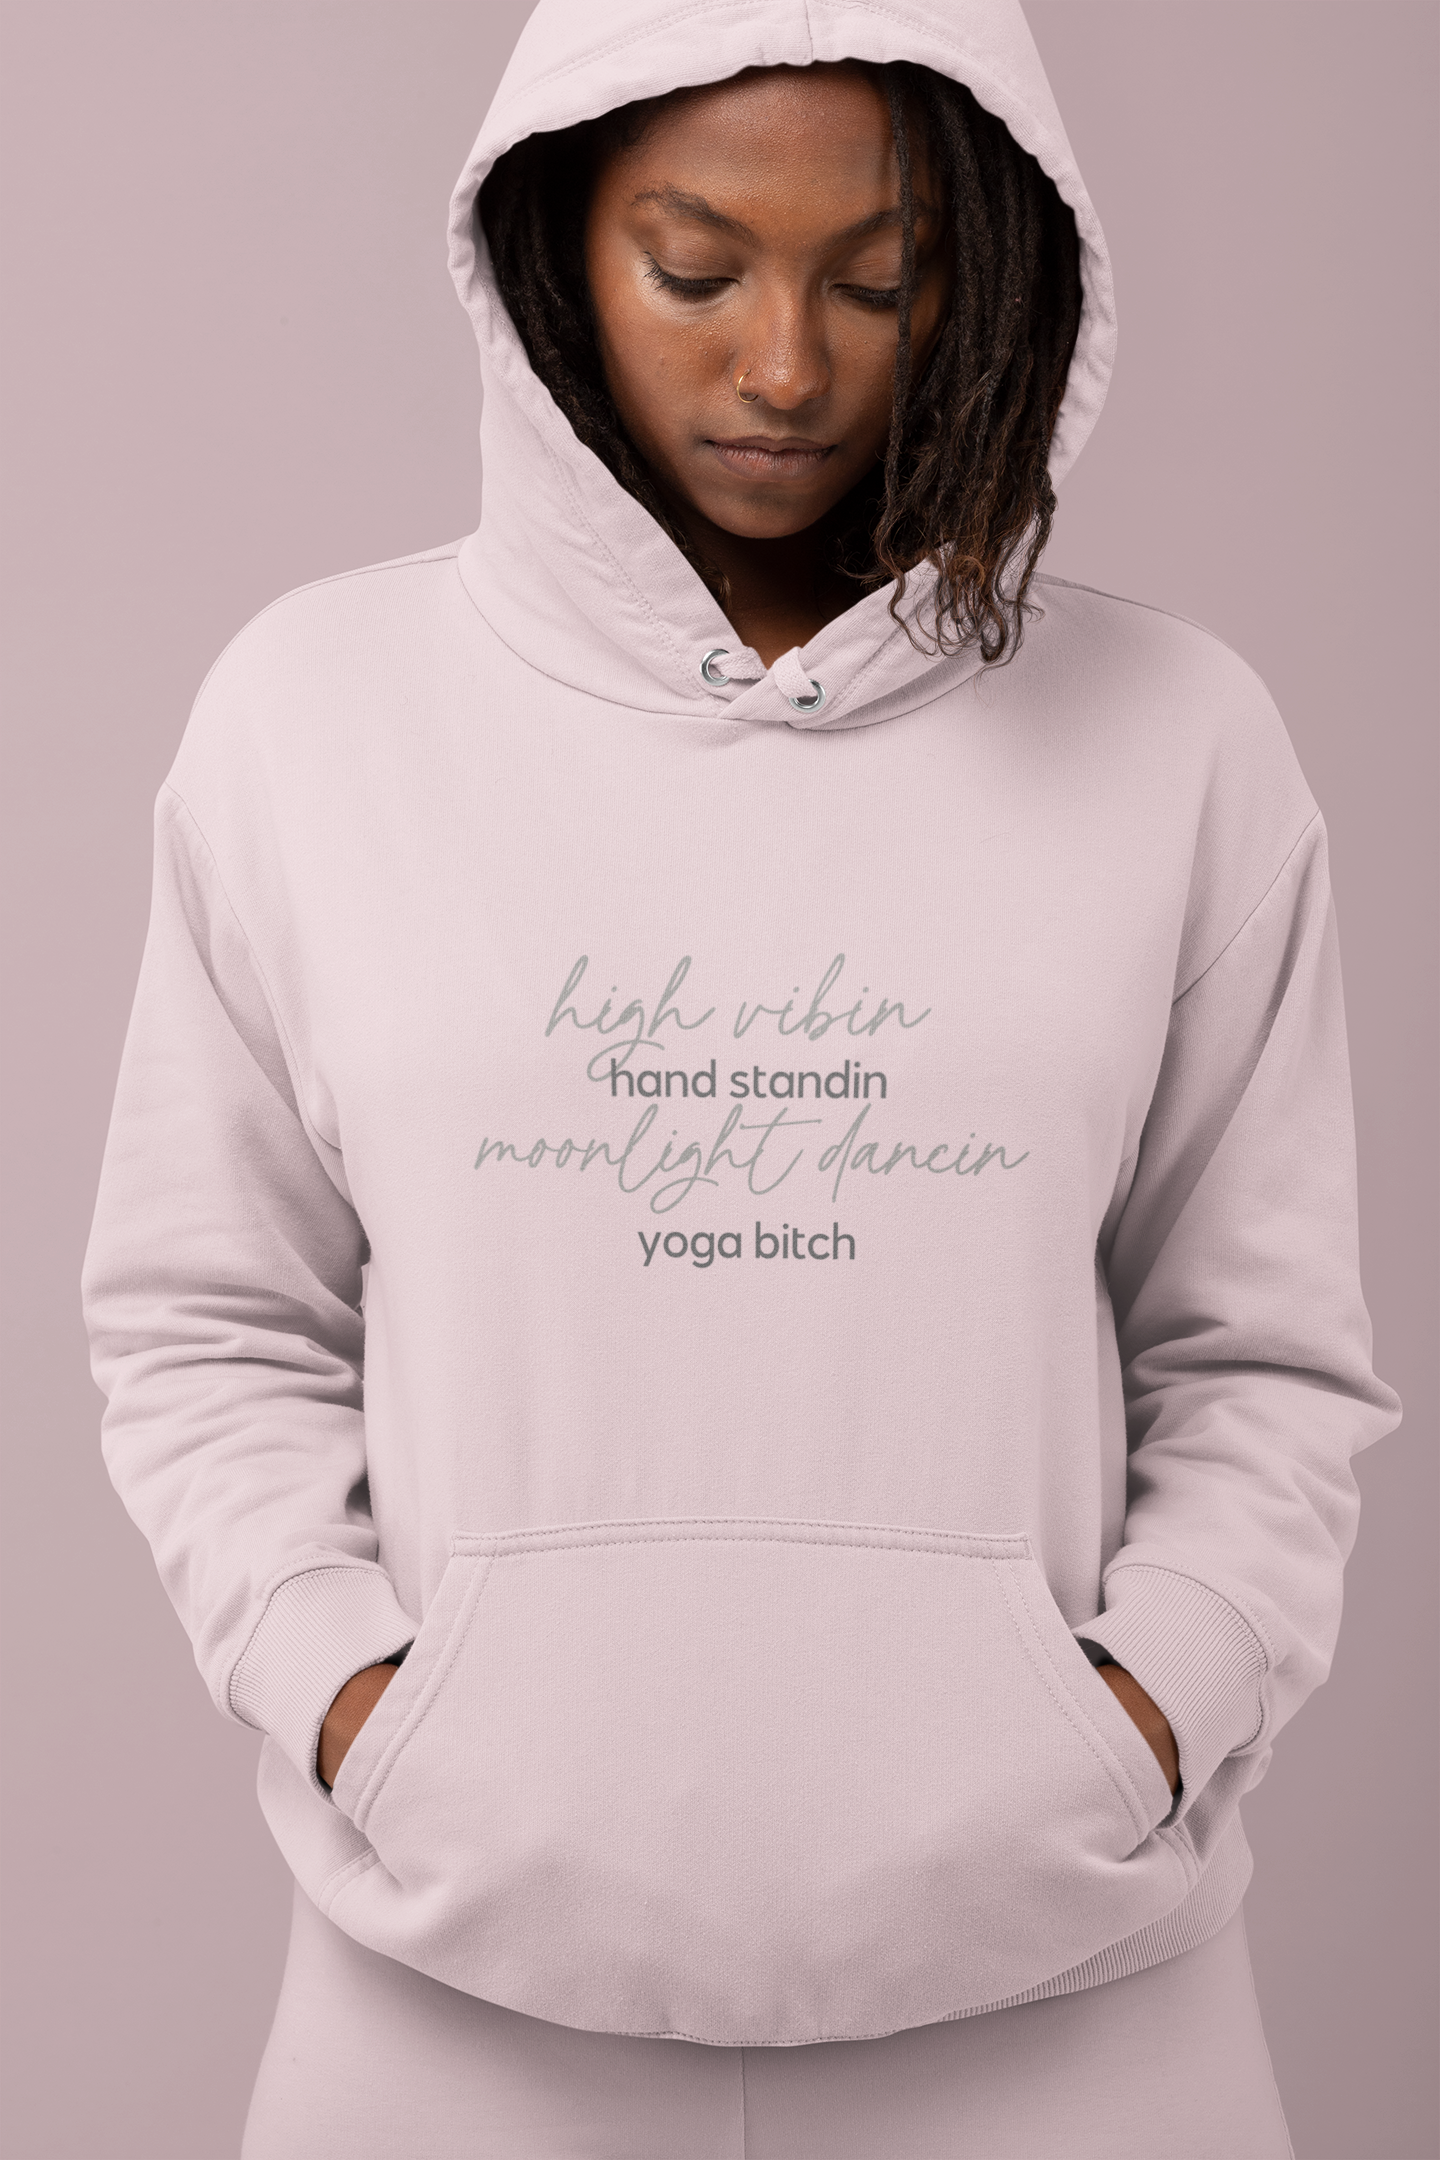 High Vibin Yoga Bitch Unisex Fleece Hoodie Sweatshirt - Yoga Bitch